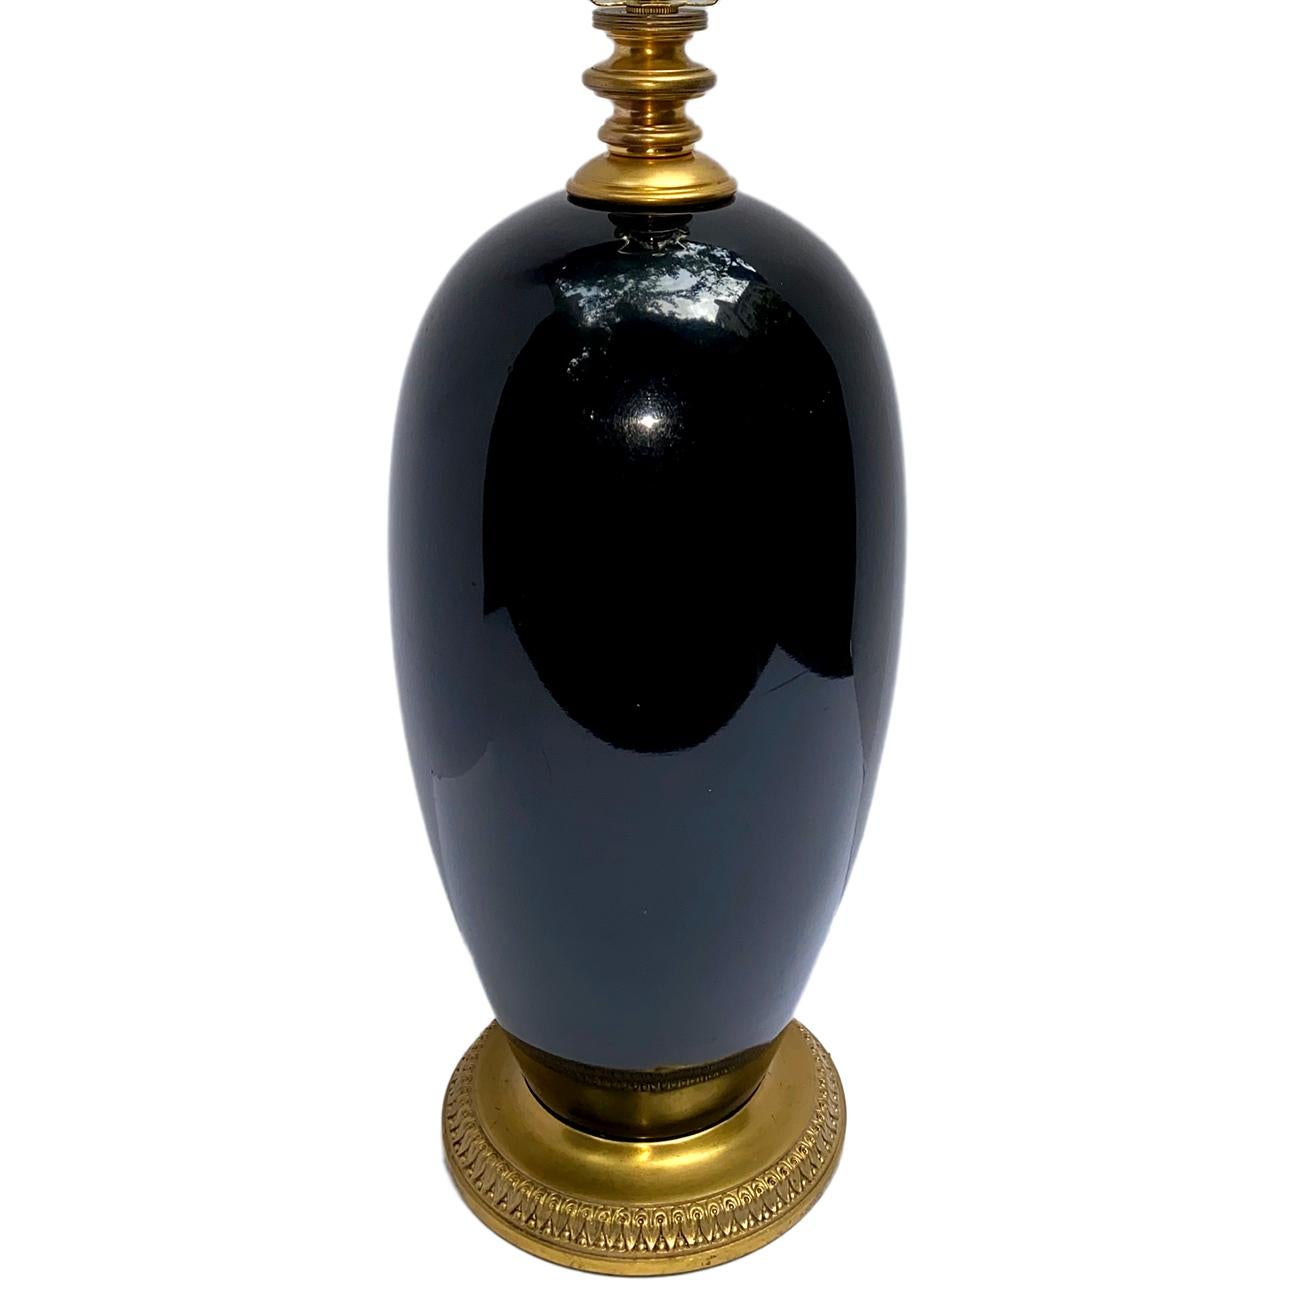 Lampe de table en porcelaine française datant des années 1920, montée sur une base en bronze doré chinois ancien. 

Mesures :
Hauteur du corps : 15
Hauteur de l'appui de l'abat-jour : 26